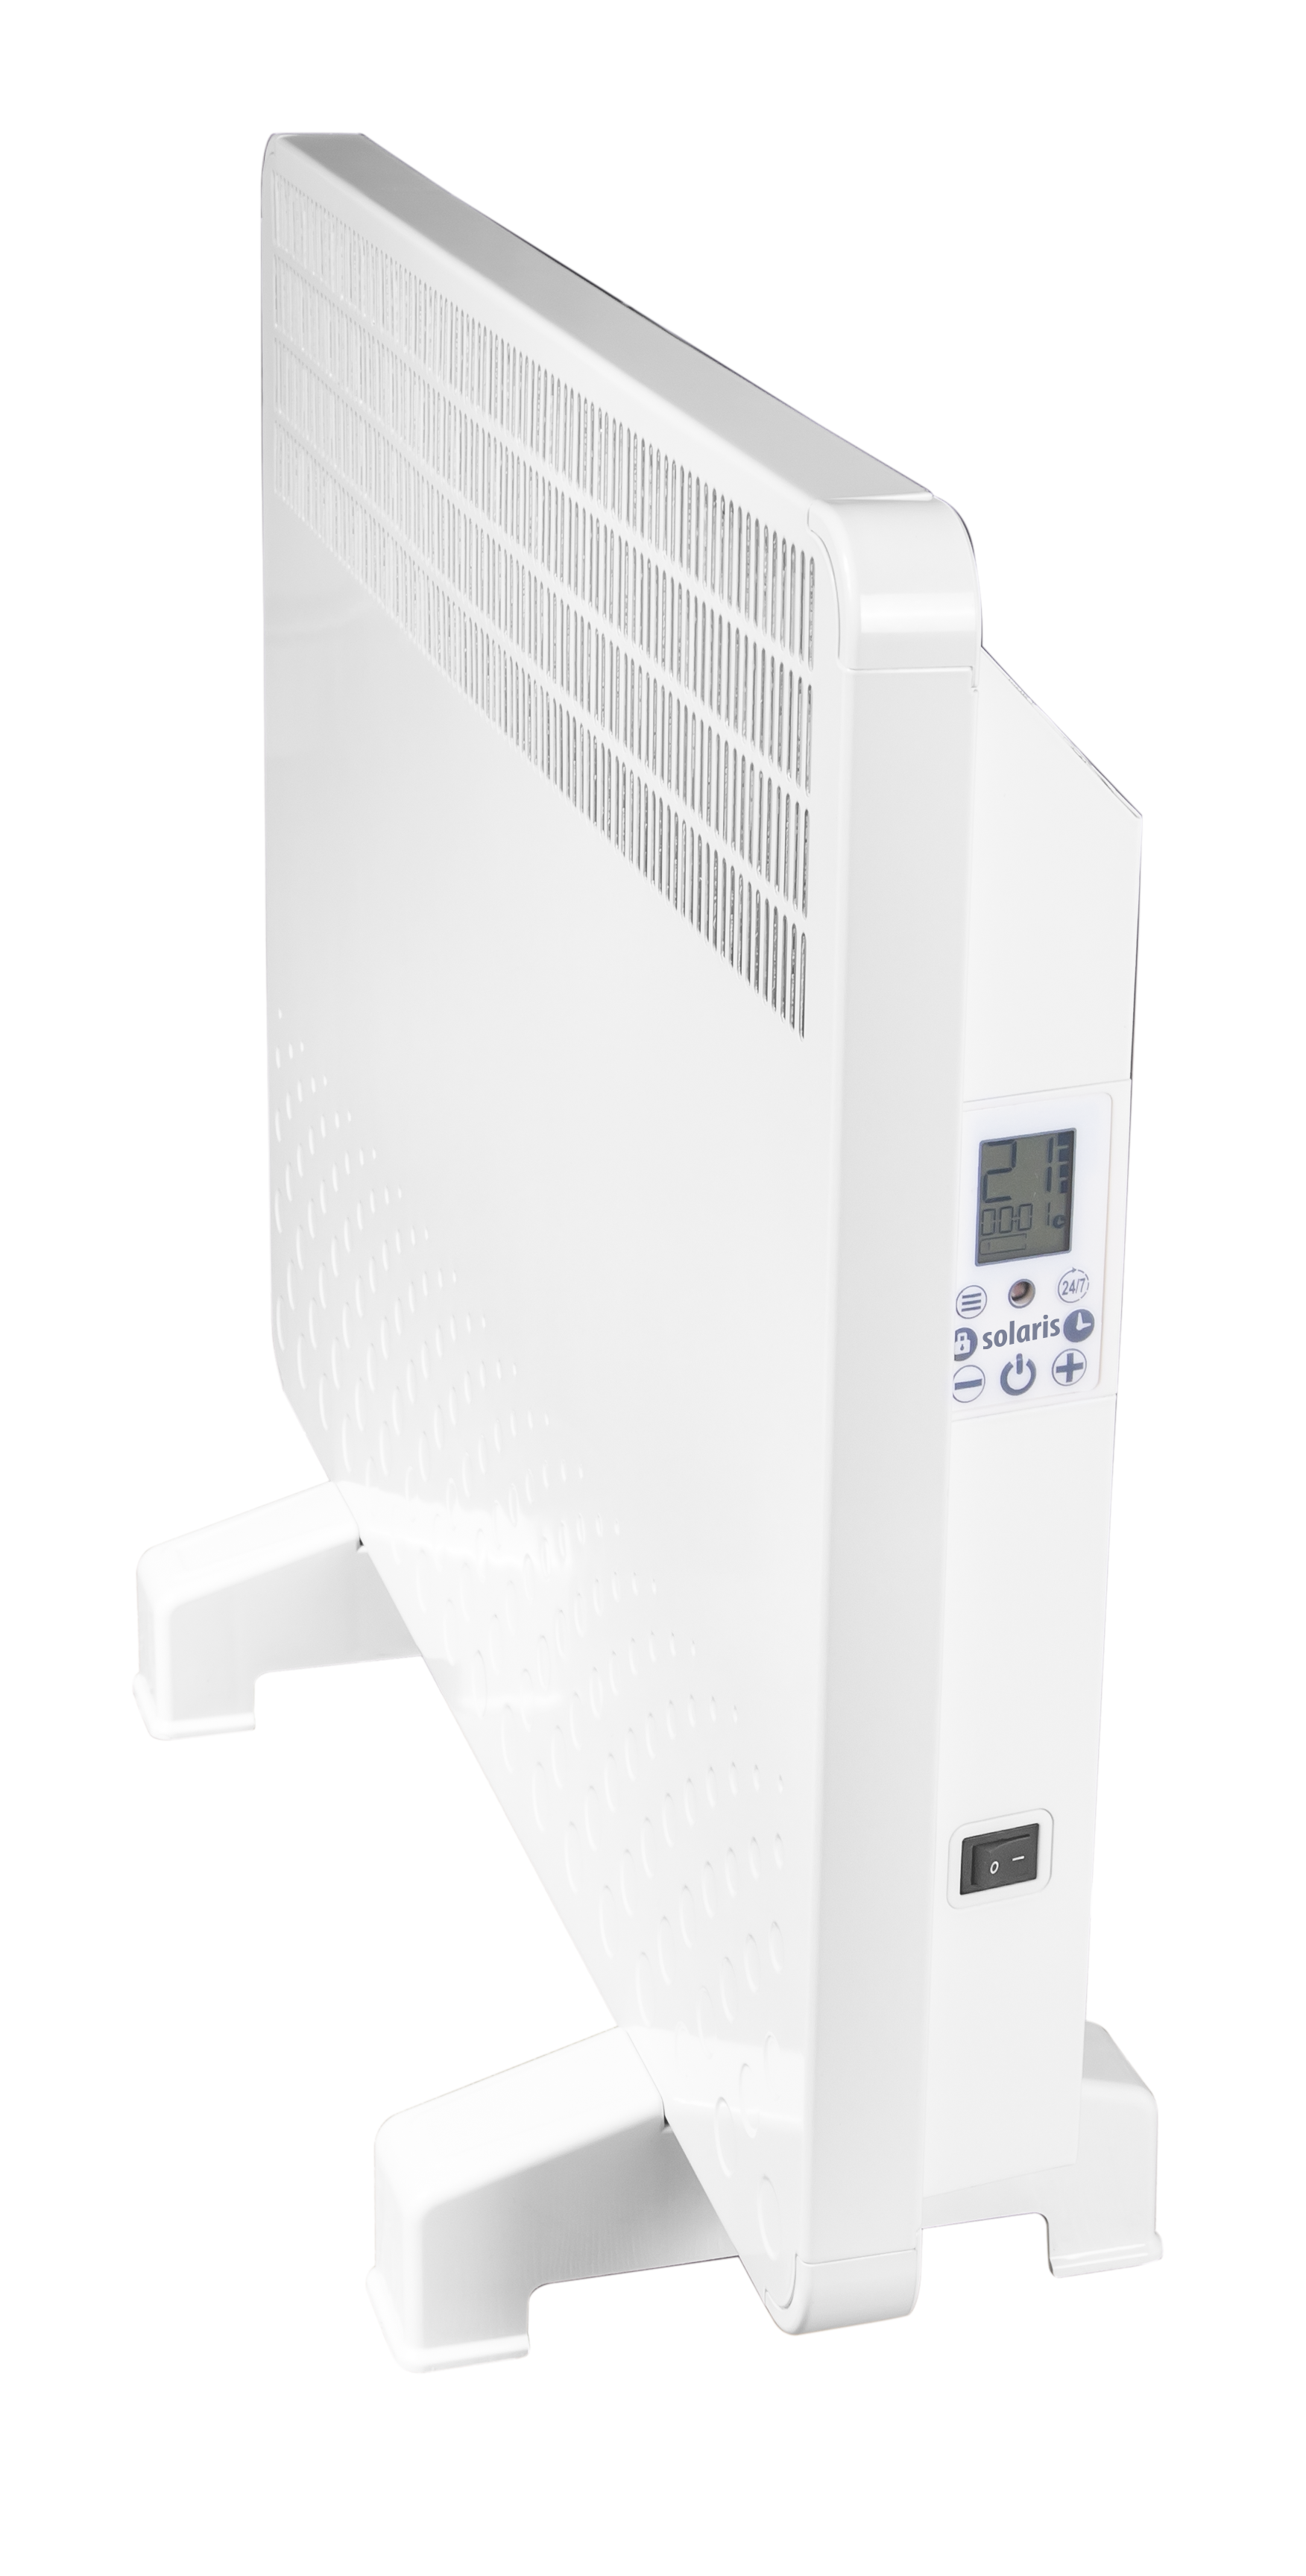 Convector electric de perete sau pardoseala Solaris KIP 1000 W, control electronic, Termostat de siguranta, termostat reglabil, IP 24, ERP 2018, pana la 12 mp fornello.ro/